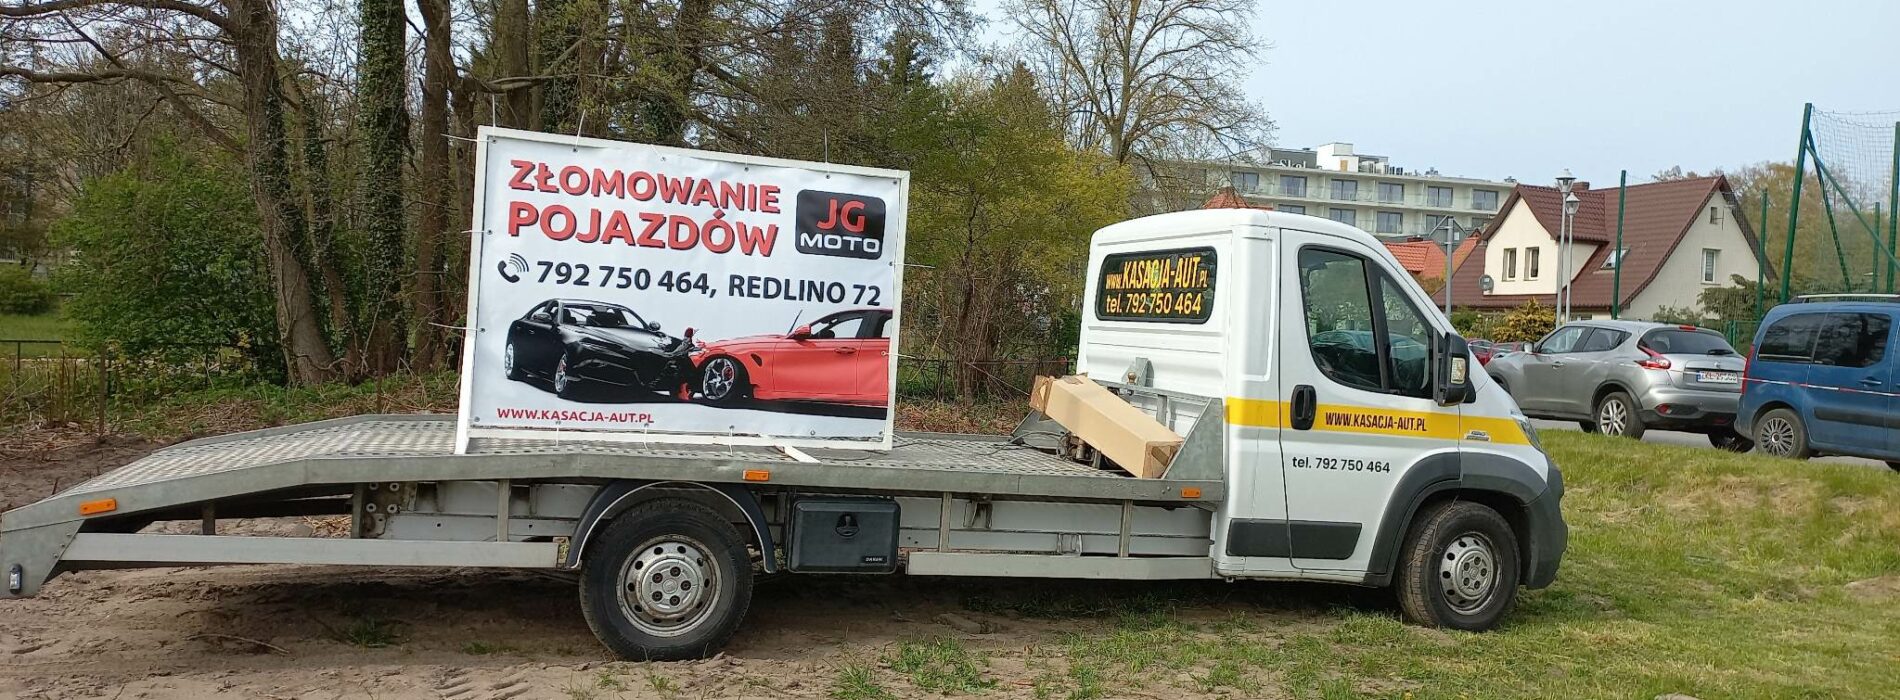 Skup aut Koszalin – jak legalnie zezłomować samochód w Koszalinie?